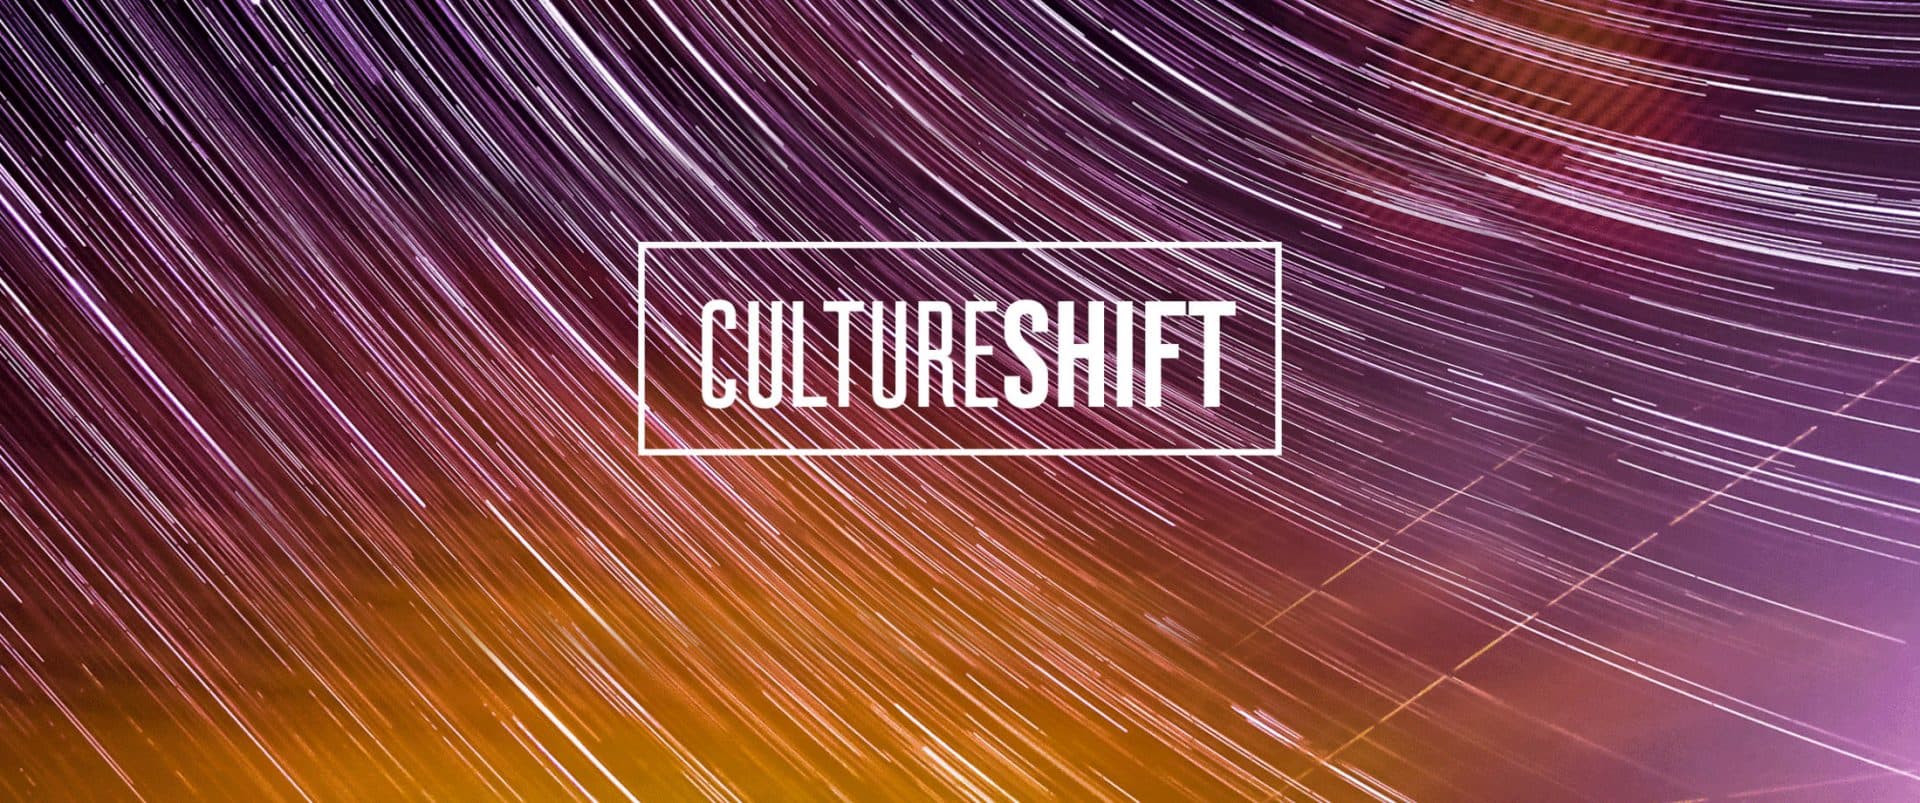 Weber Shandwick Launches CultureShift